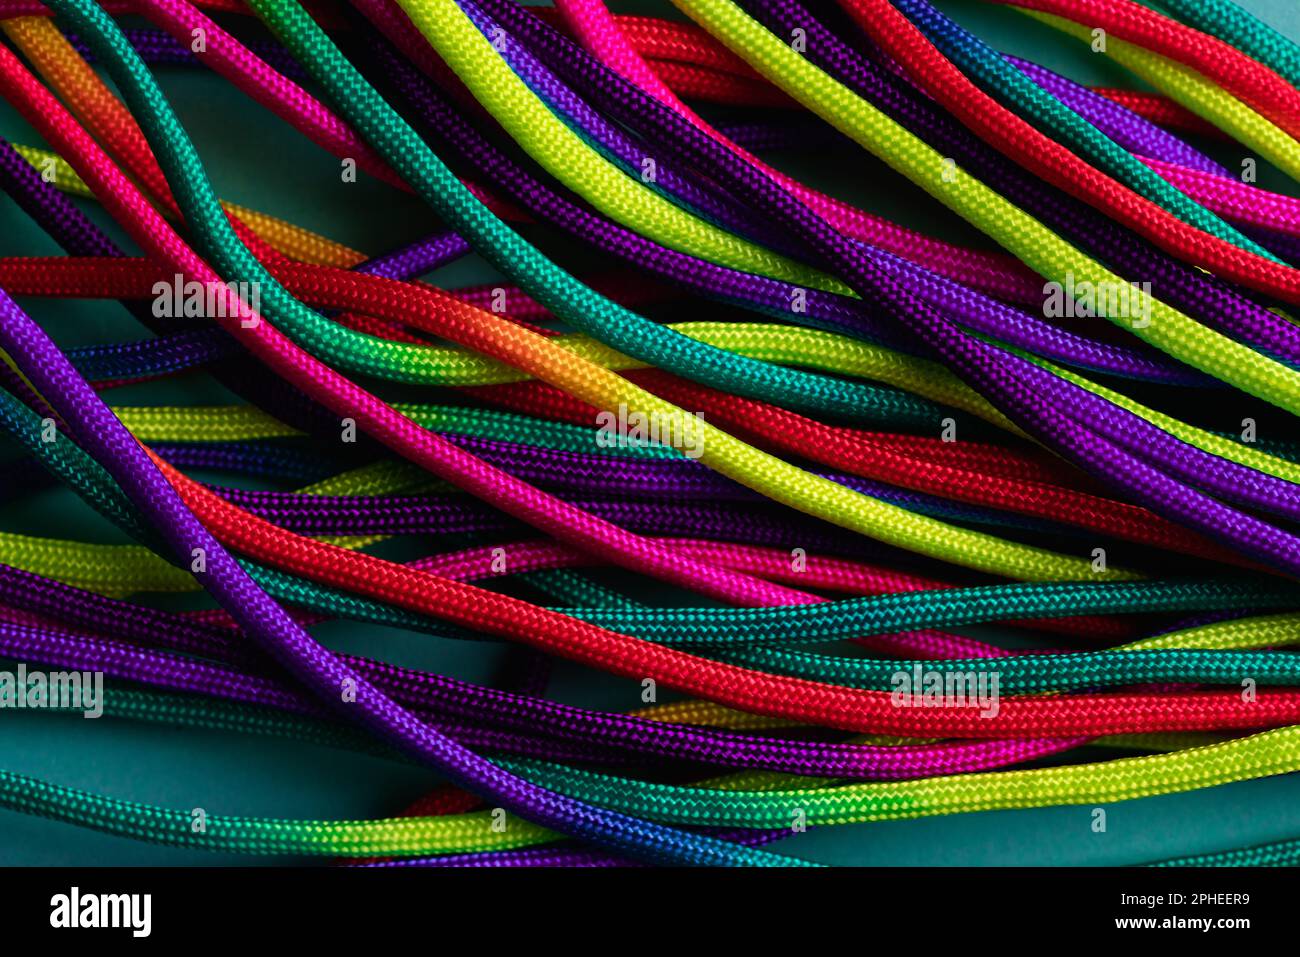 Los cordones de colores brillantes de distintos colores Fotografía de stock  - Alamy